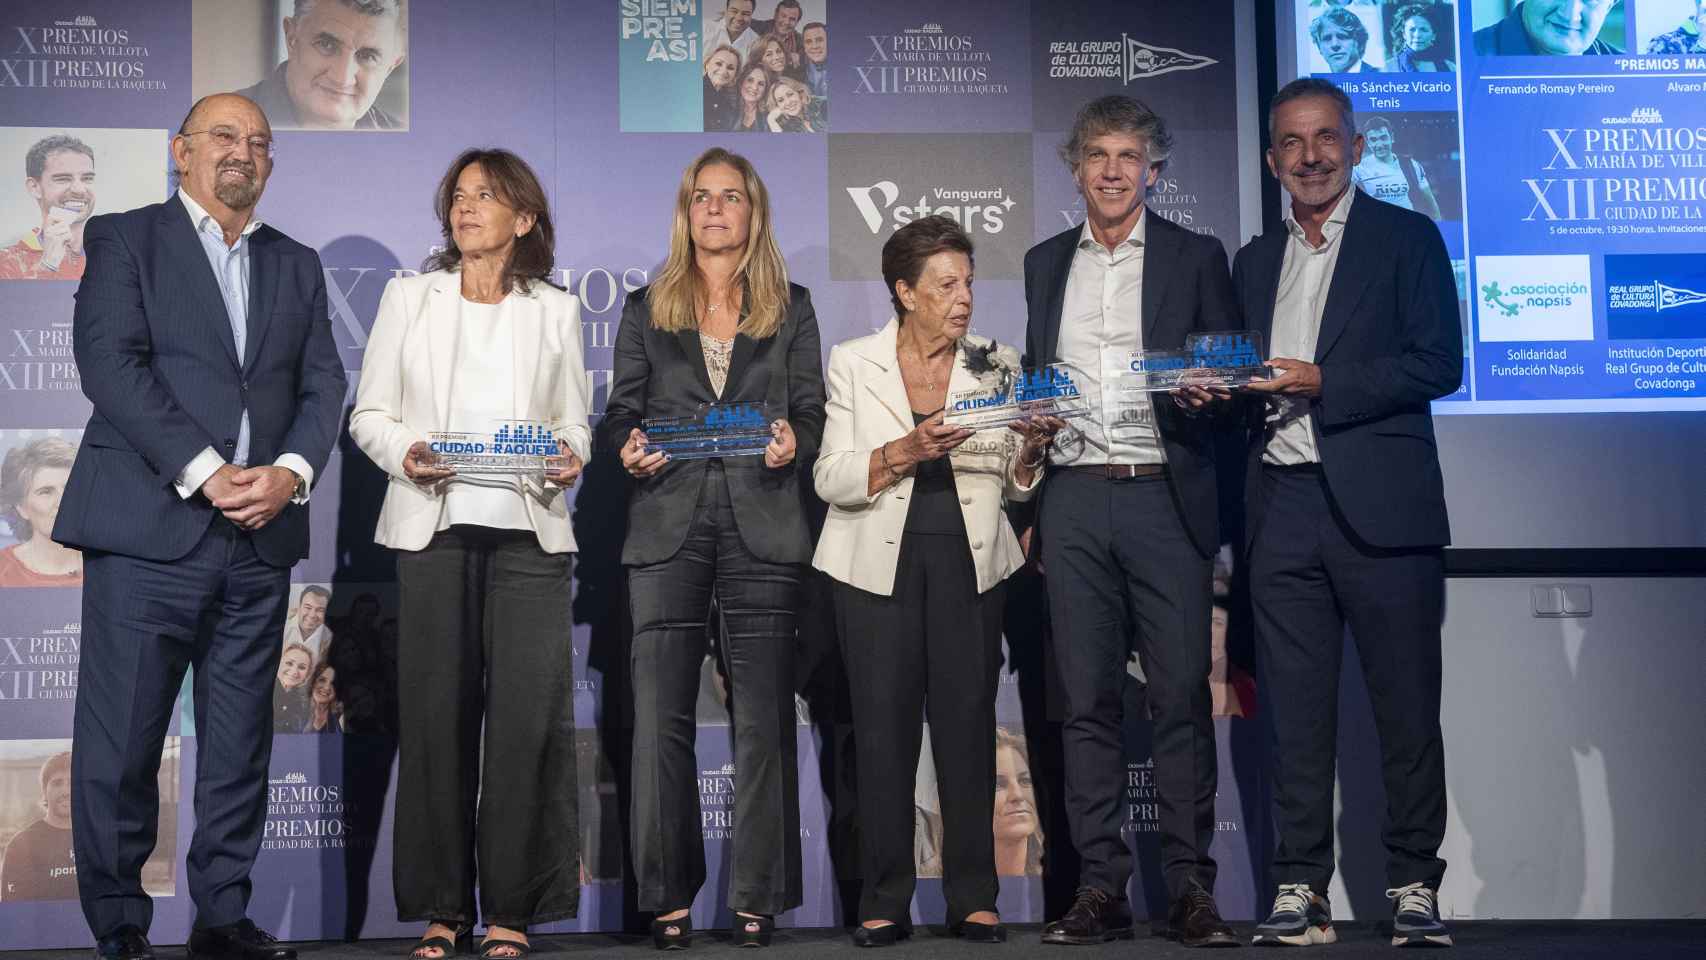 La familia Sánchez Vicario, junto al presidente de la Real Federación Española de Tenis, tras recibir el galardón a la Trayectoria en el Tenis en los Premios Ciudad de la Raqueta.